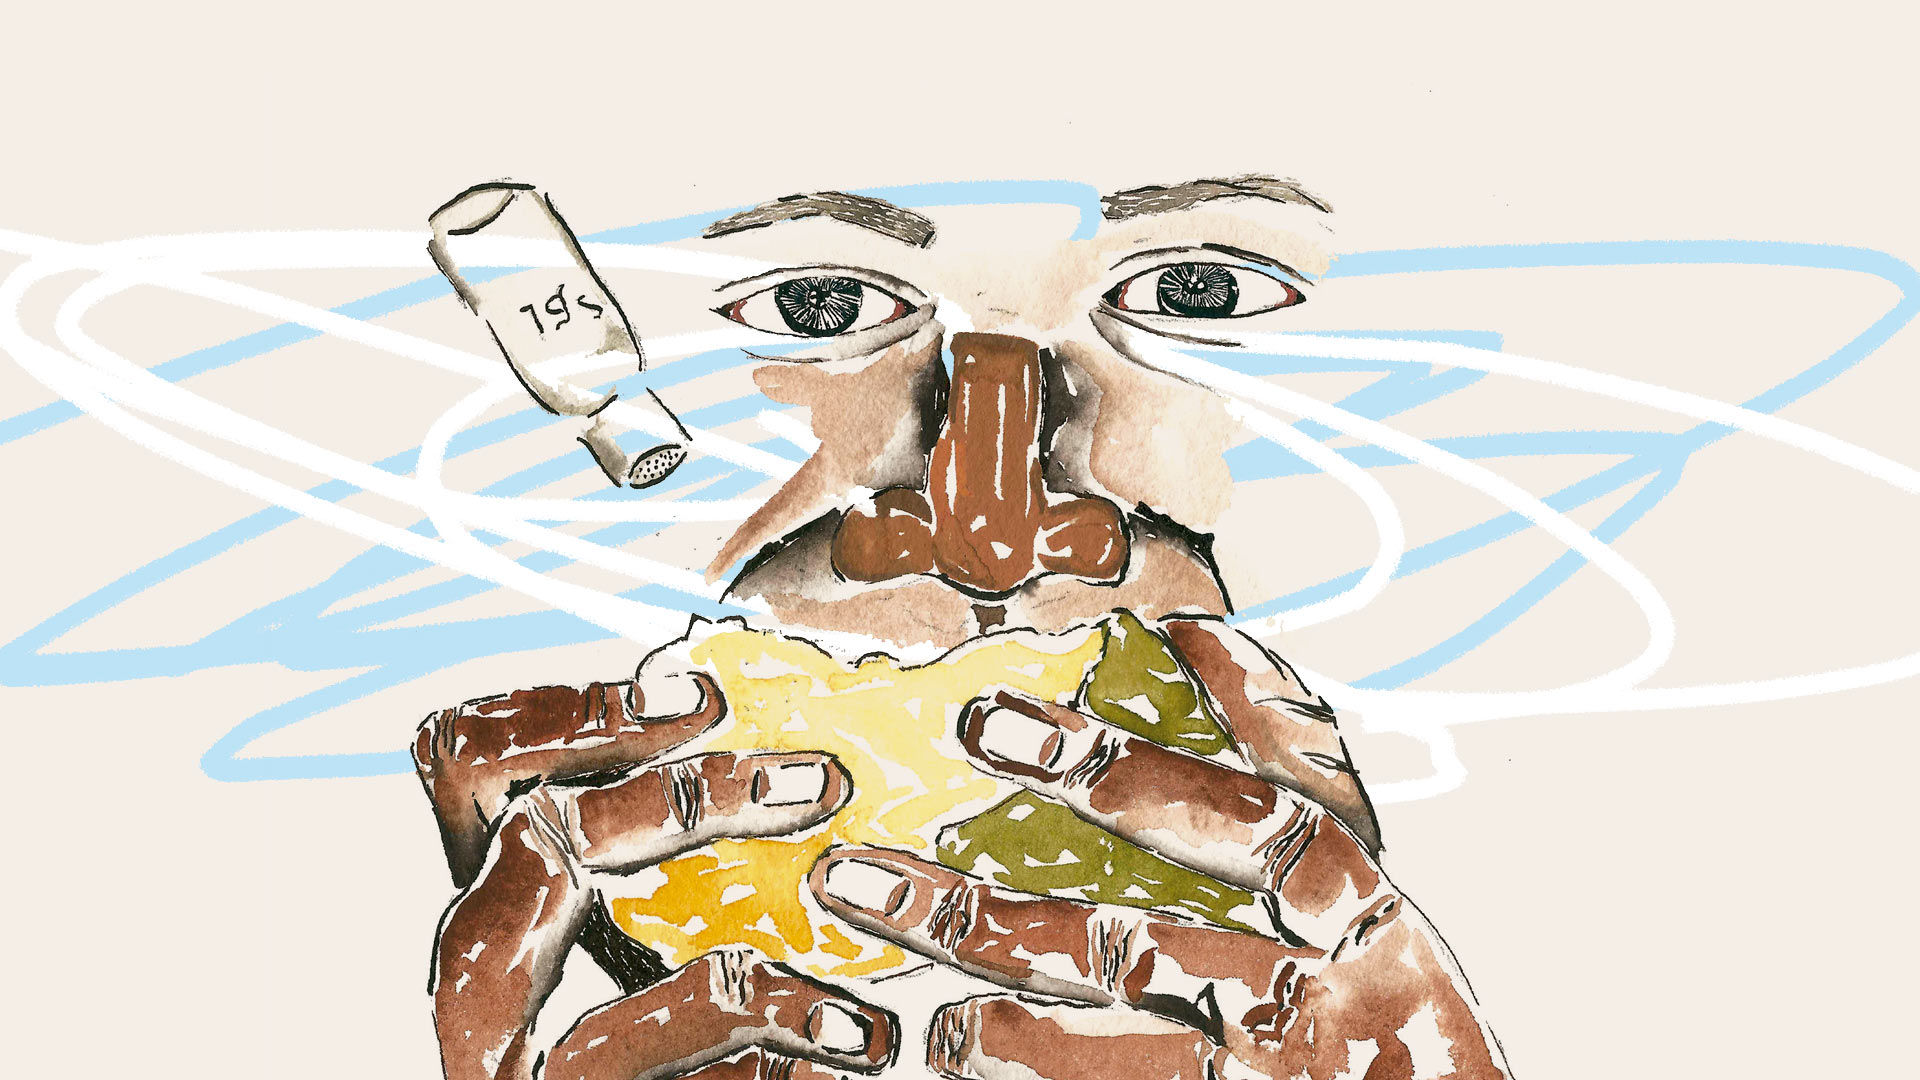 Ilustração do livro "Homem-bicho - bicho-homem", de Itamar Assumpção